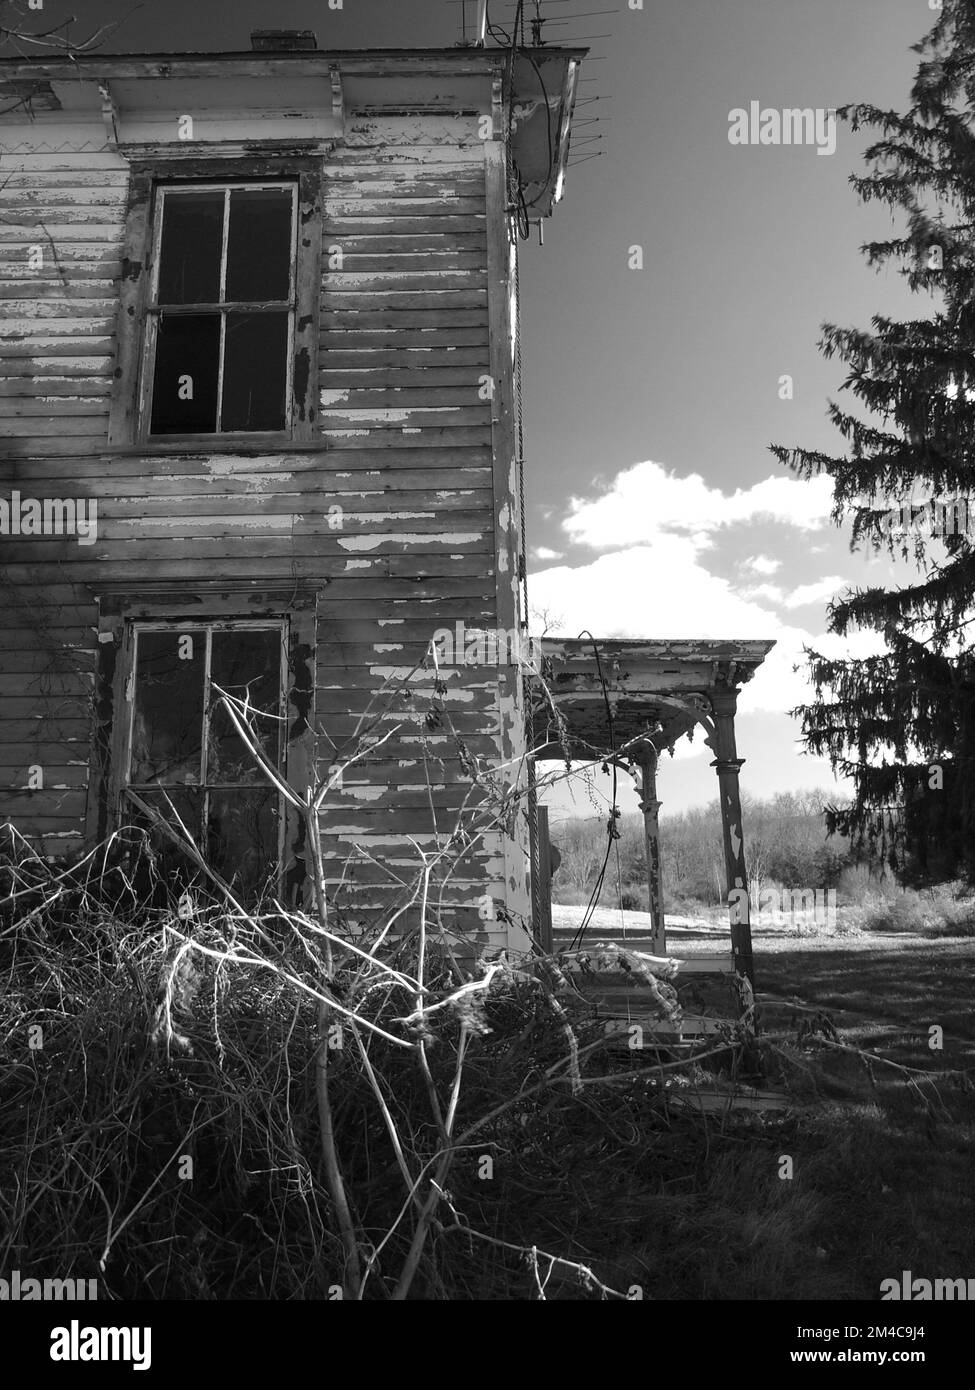 Scènes d'une ferme abandonnée et abandonnée dans le comté de Sussex, New Jersey. Ancienne laiterie, ces structures sont inactives depuis des années. Banque D'Images